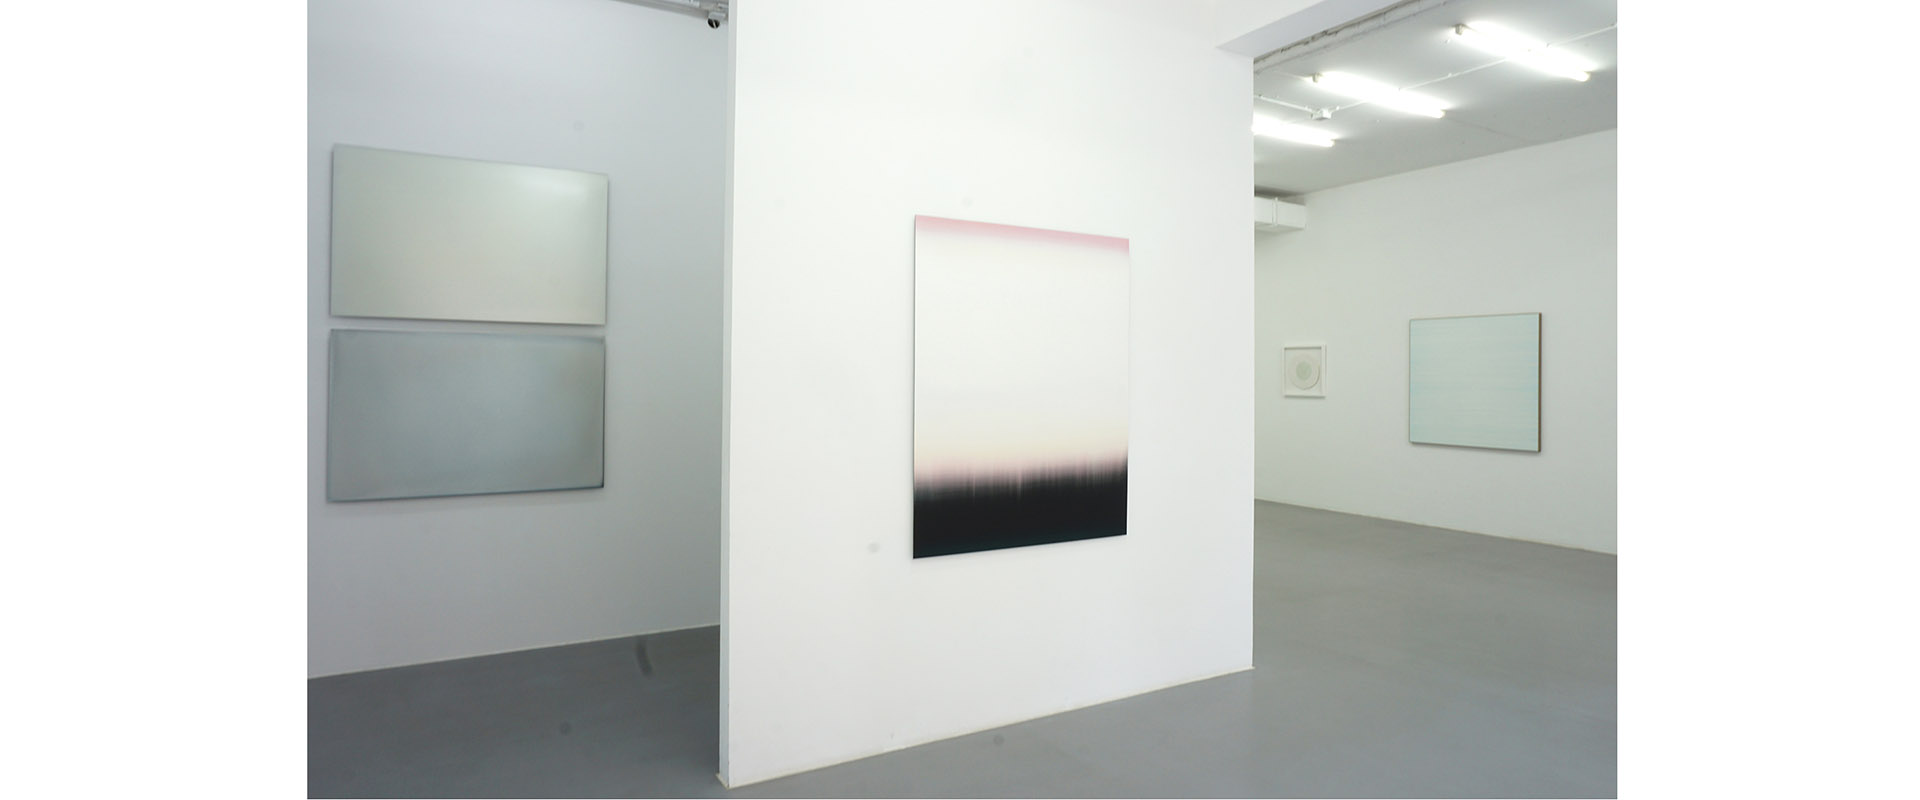 Ausstellungsansicht "wie weiss ist wissen die weisen", Galerie Renate Bender 2019